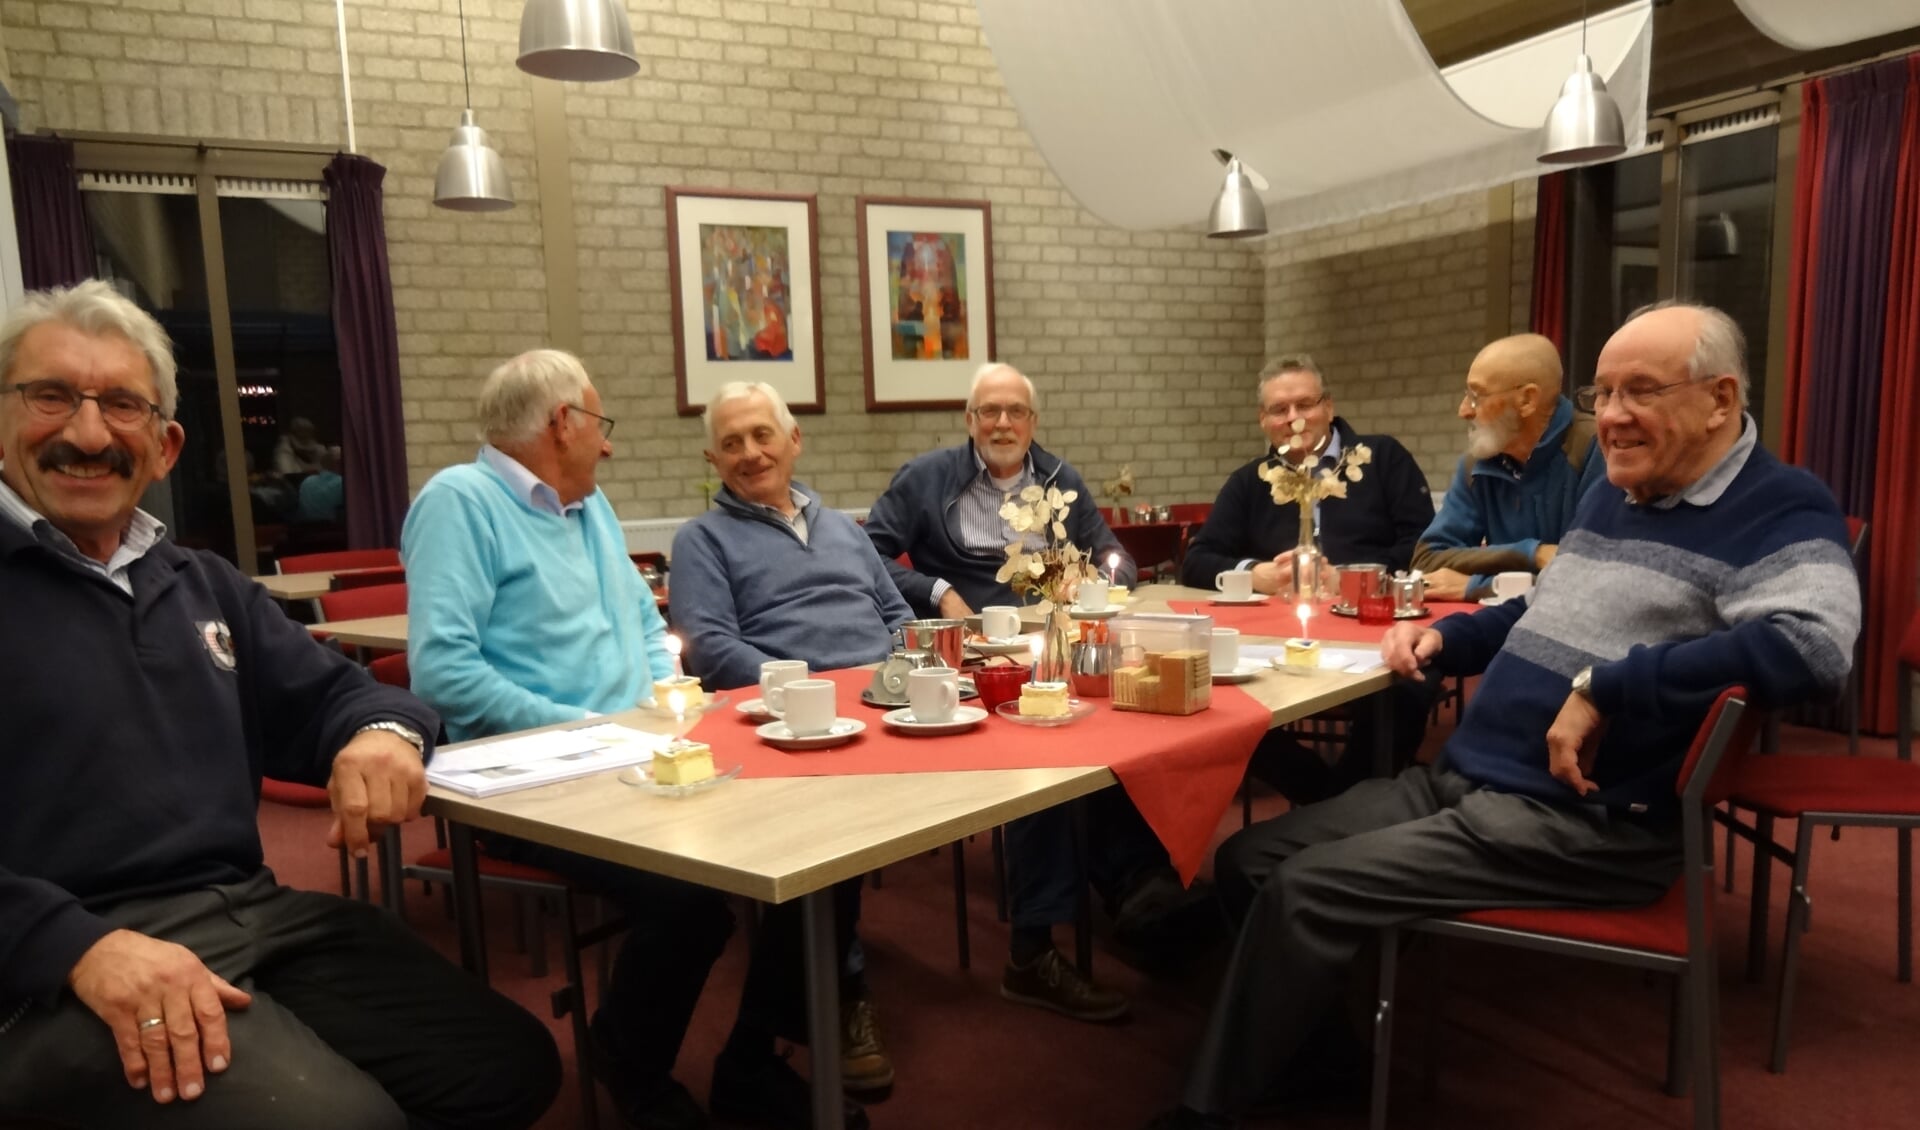 De Projectgroep 50 jaar Samen op Weg aan het gebak met kaarsje. (foto: Ankh van Burk)